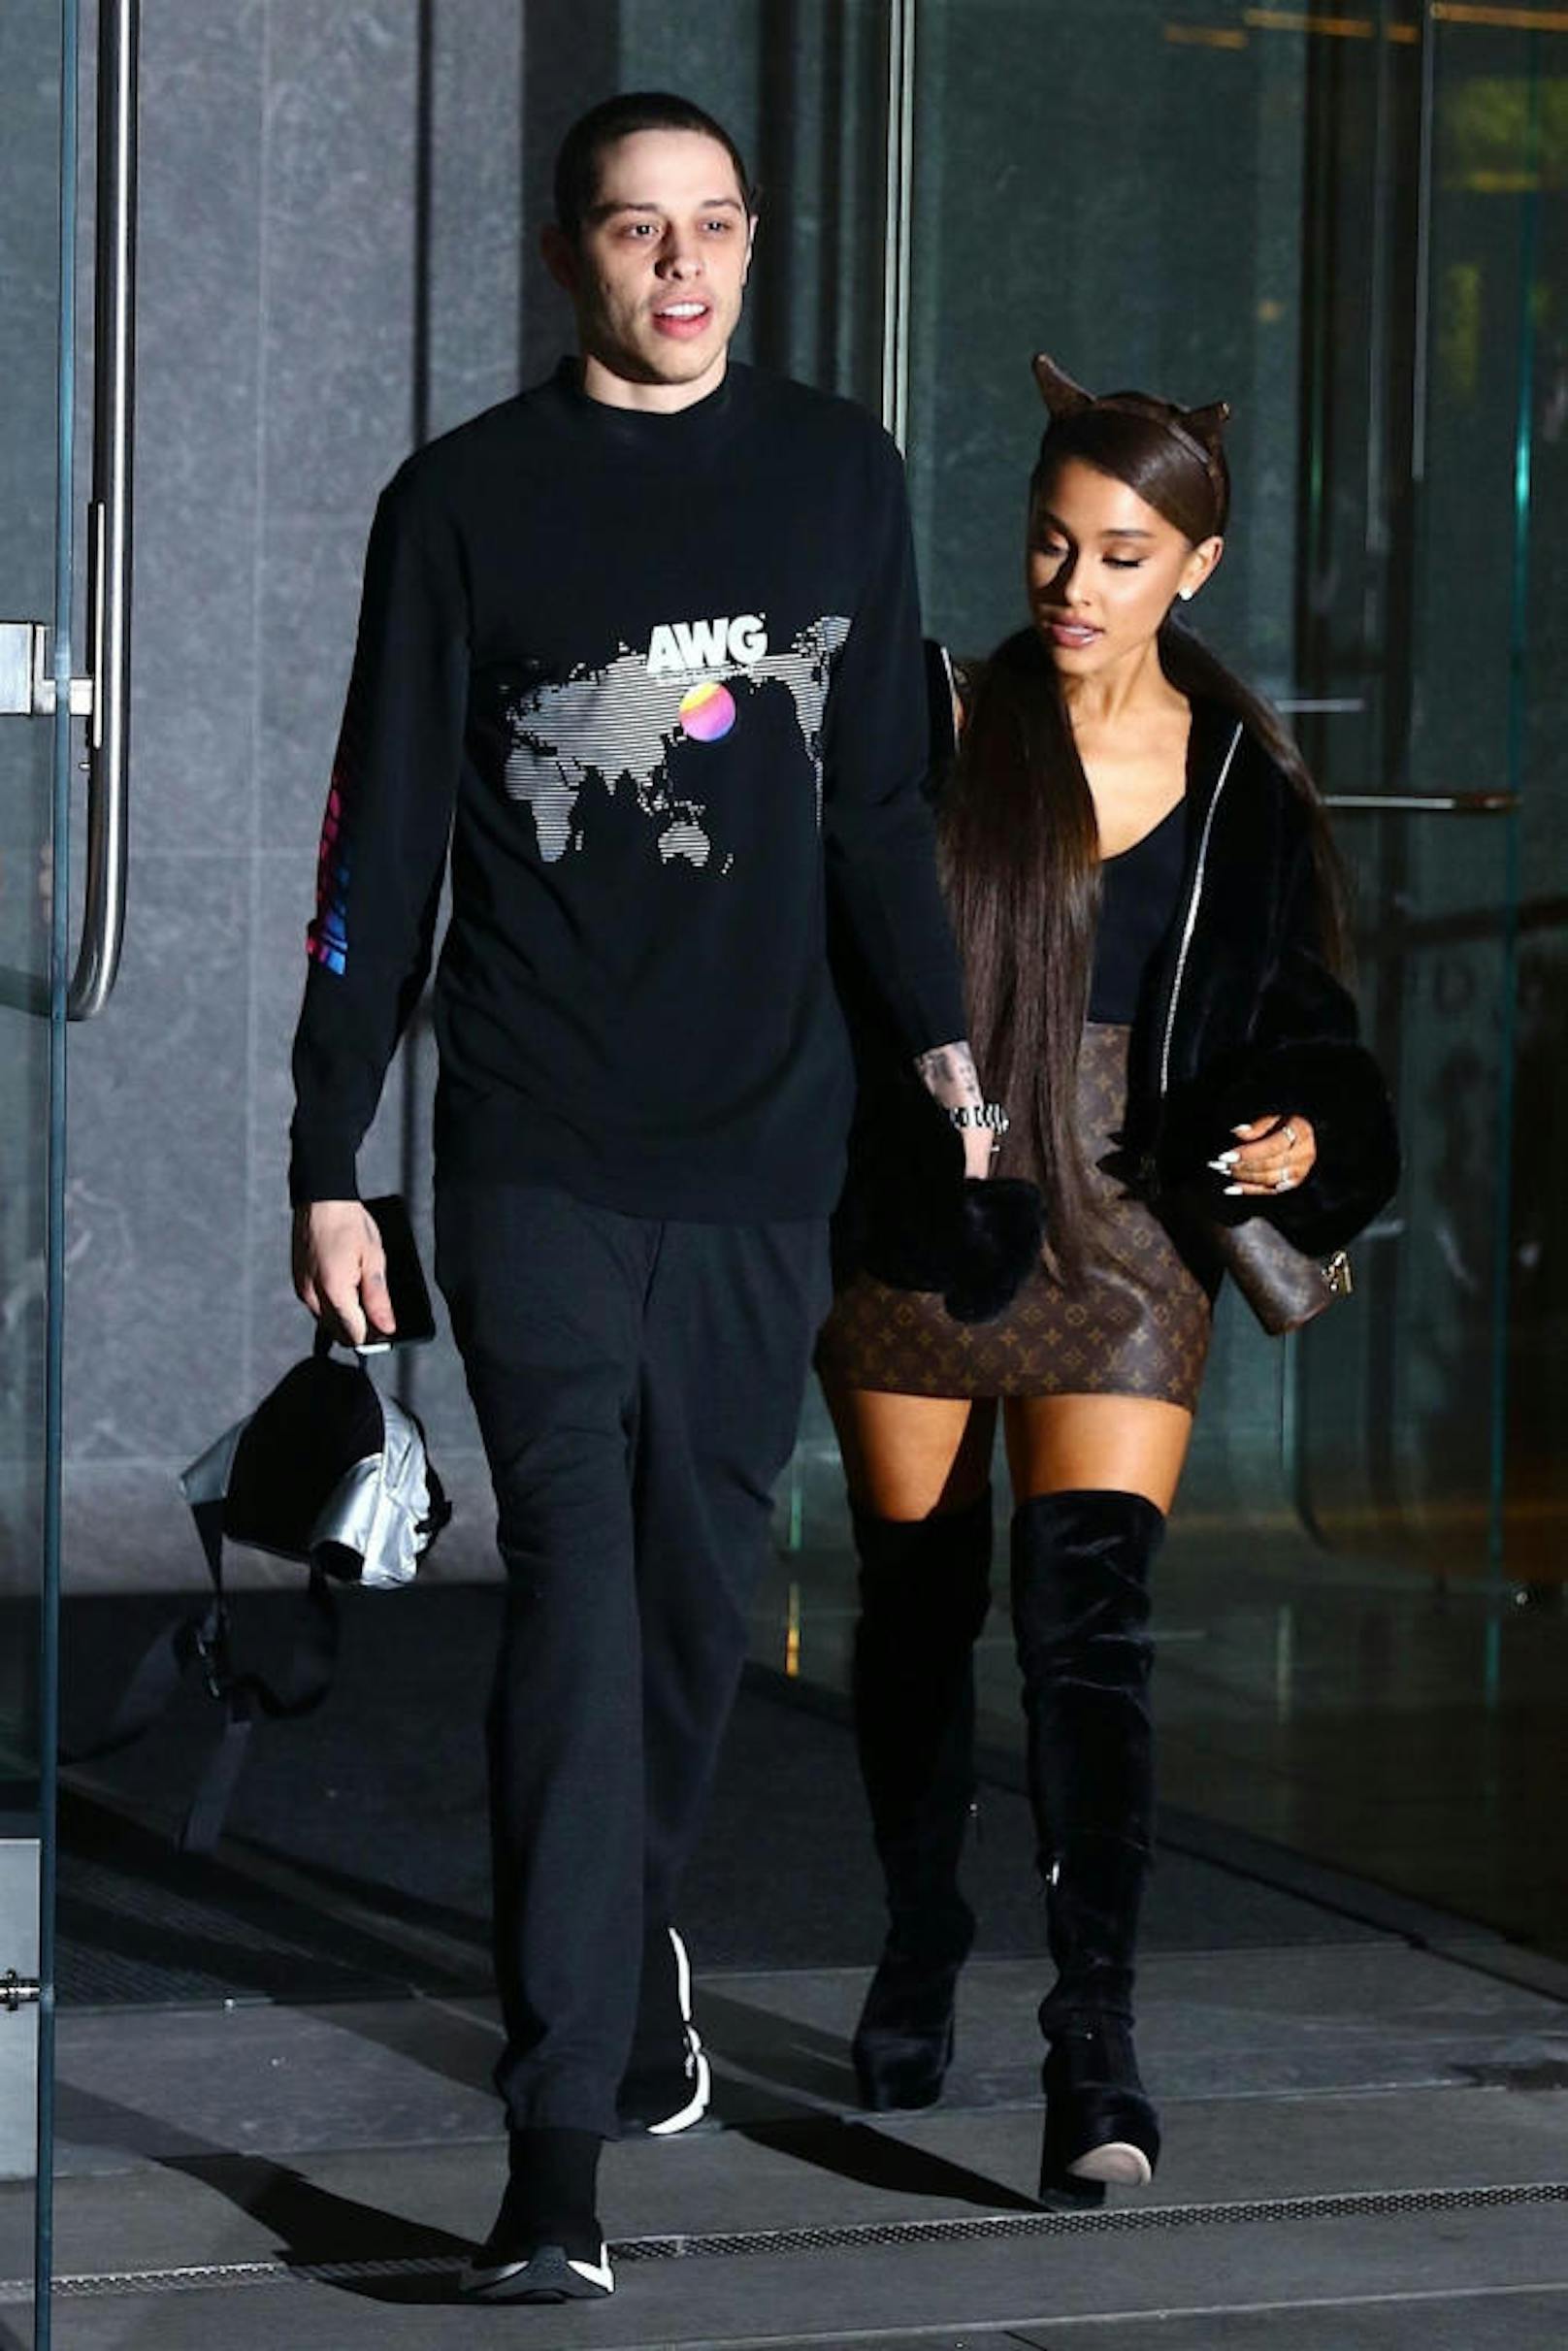 Die Beziehung von Ariana Grande und Pete Davidson war wie ein Wirbelwind